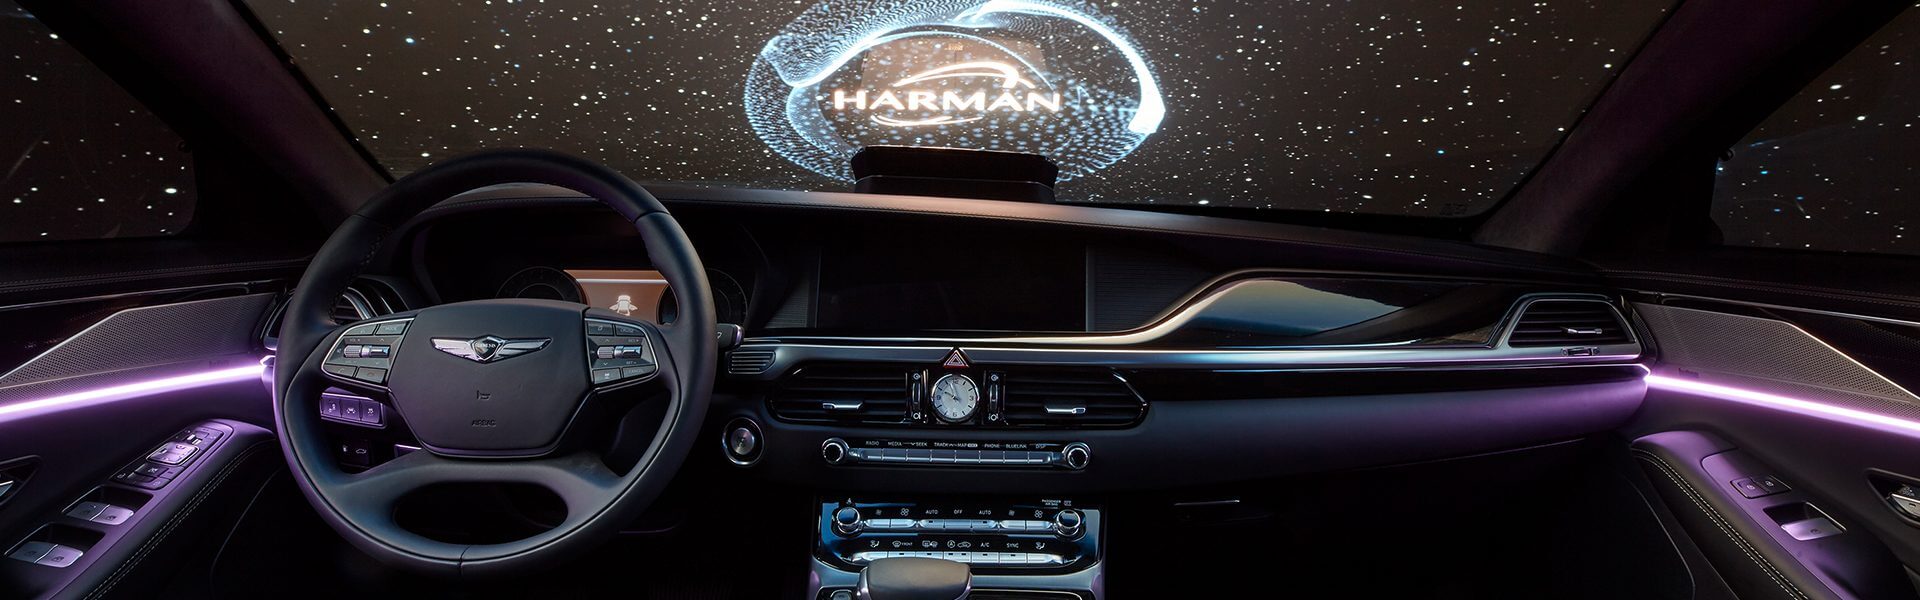 Demofahrzeug von OSK und HARMAN zeigt Audio-Zukunft im Auto